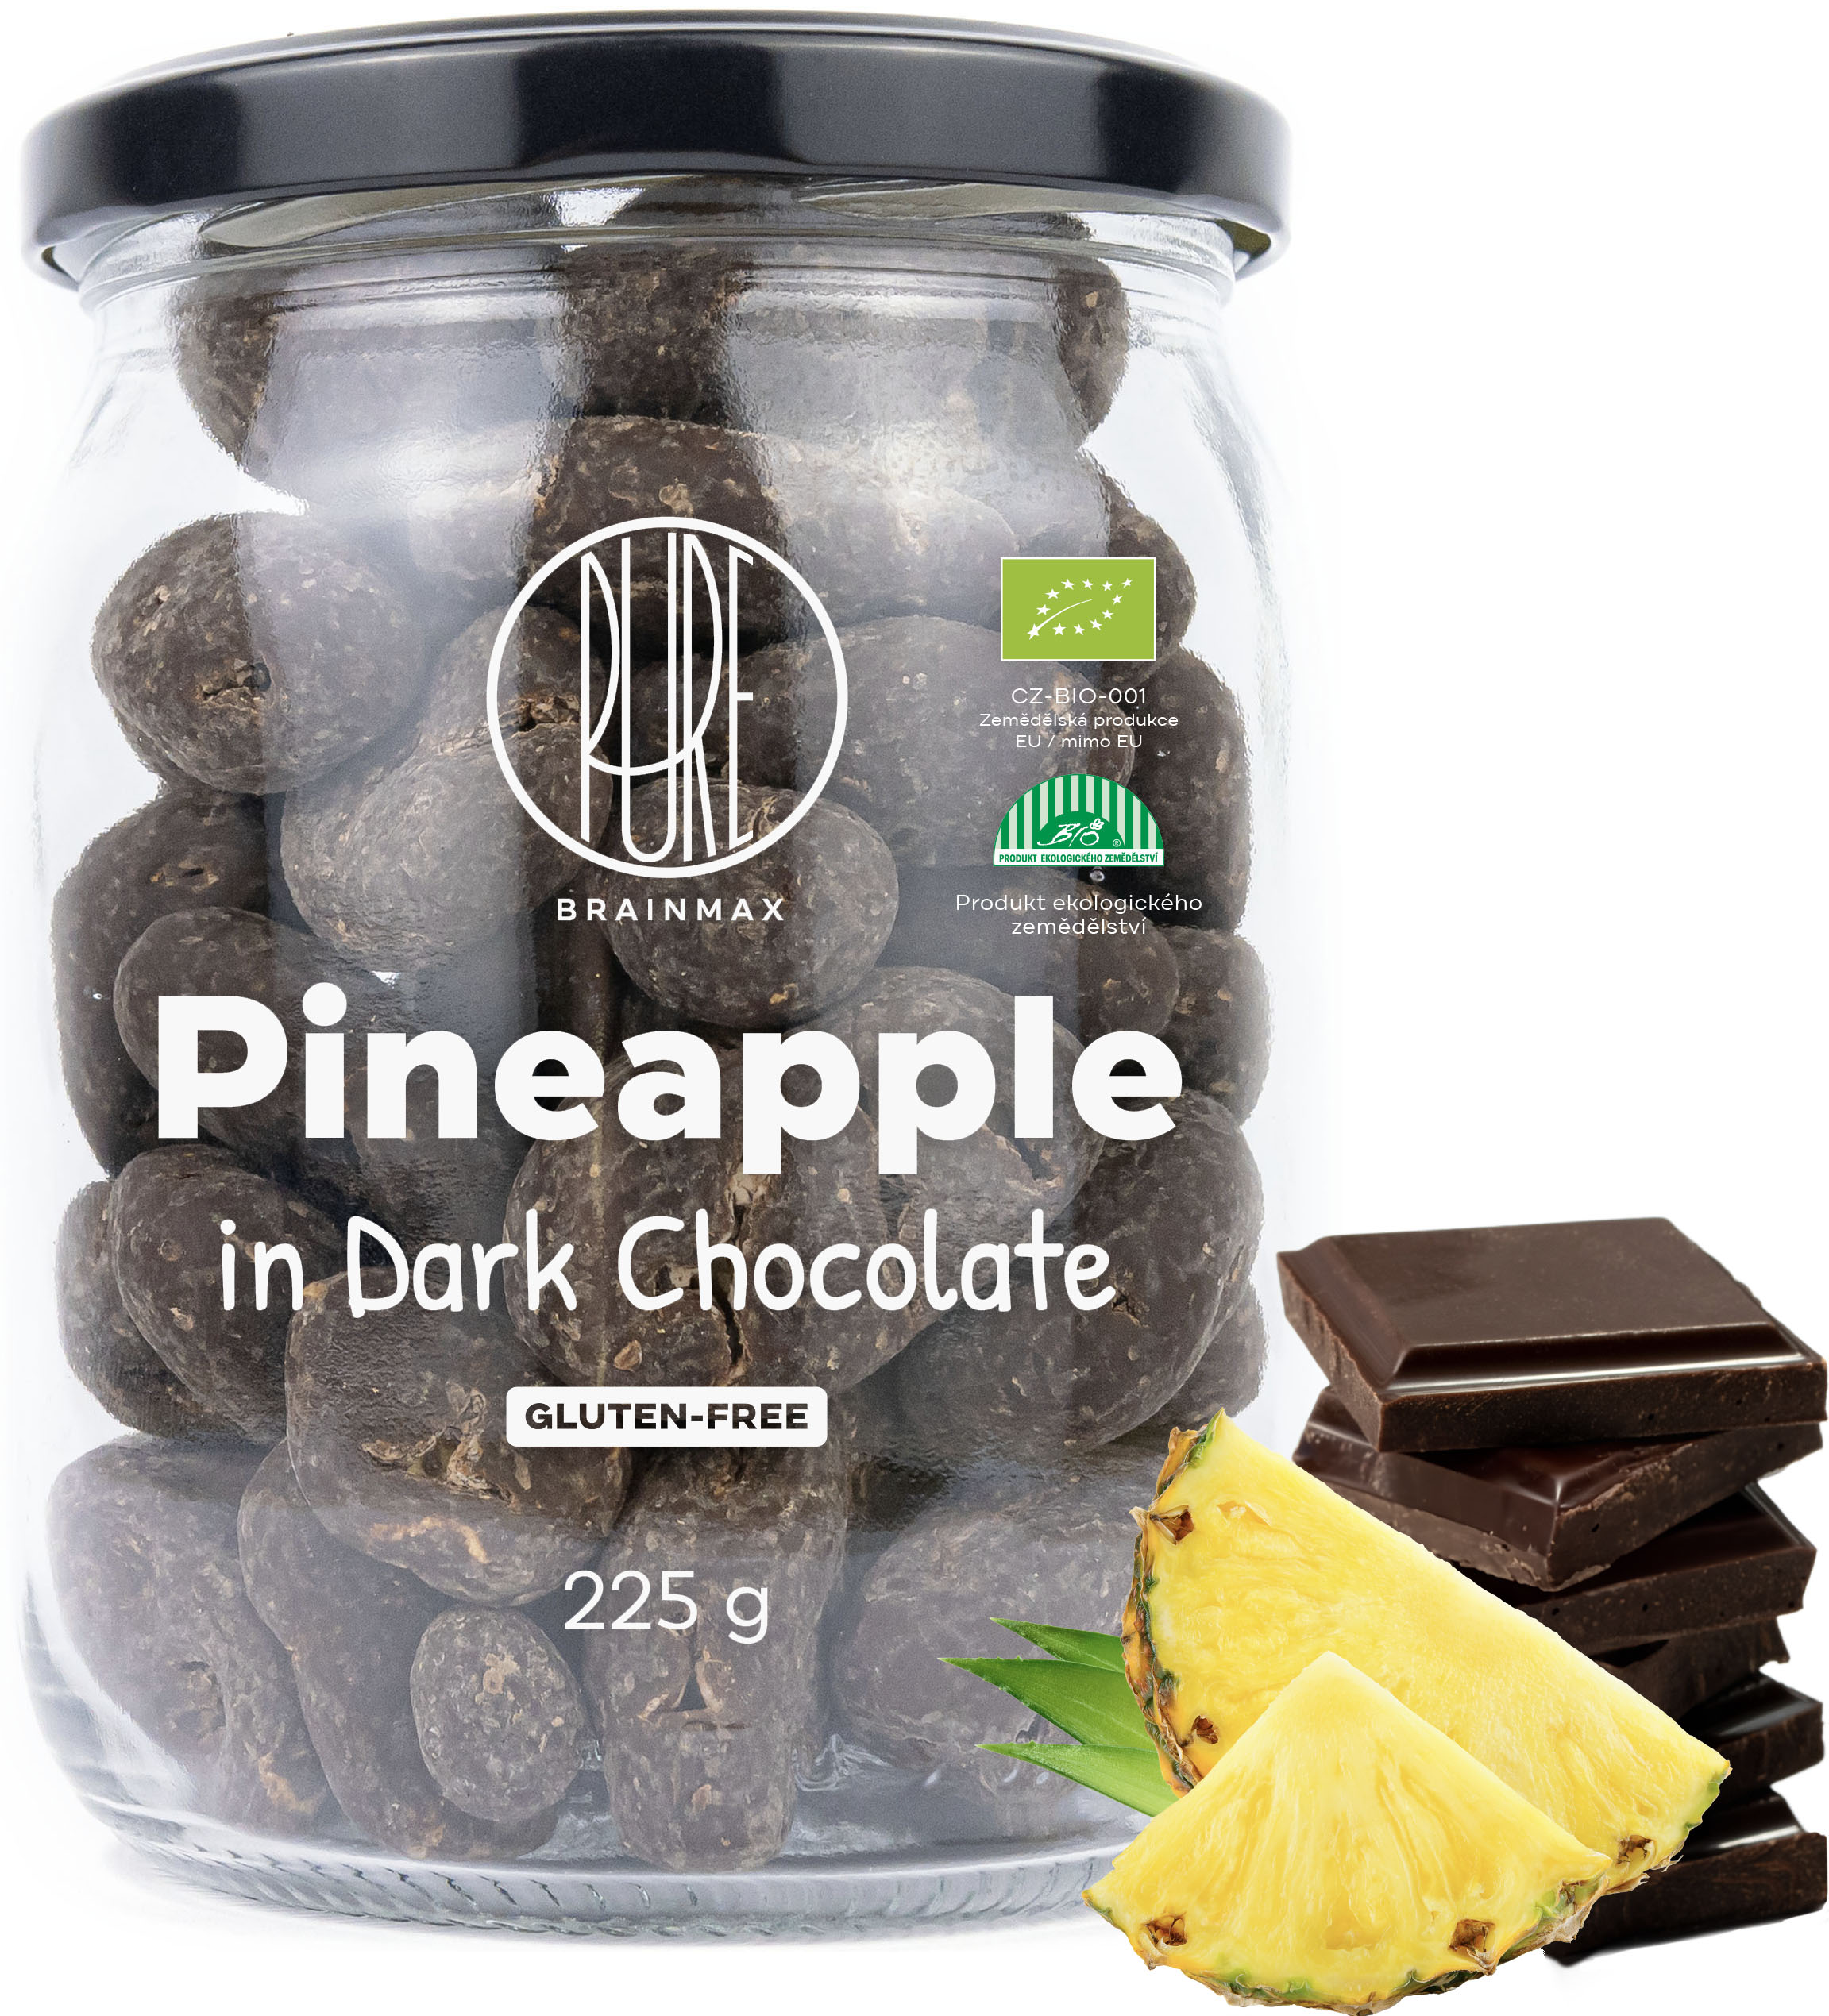 BrainMax Pure Pineapple in Dark Chocolate, Lyofilizovaný ananas v hořké čokoládě, BIO, 225 g *CZ-BIO-001 certifikát